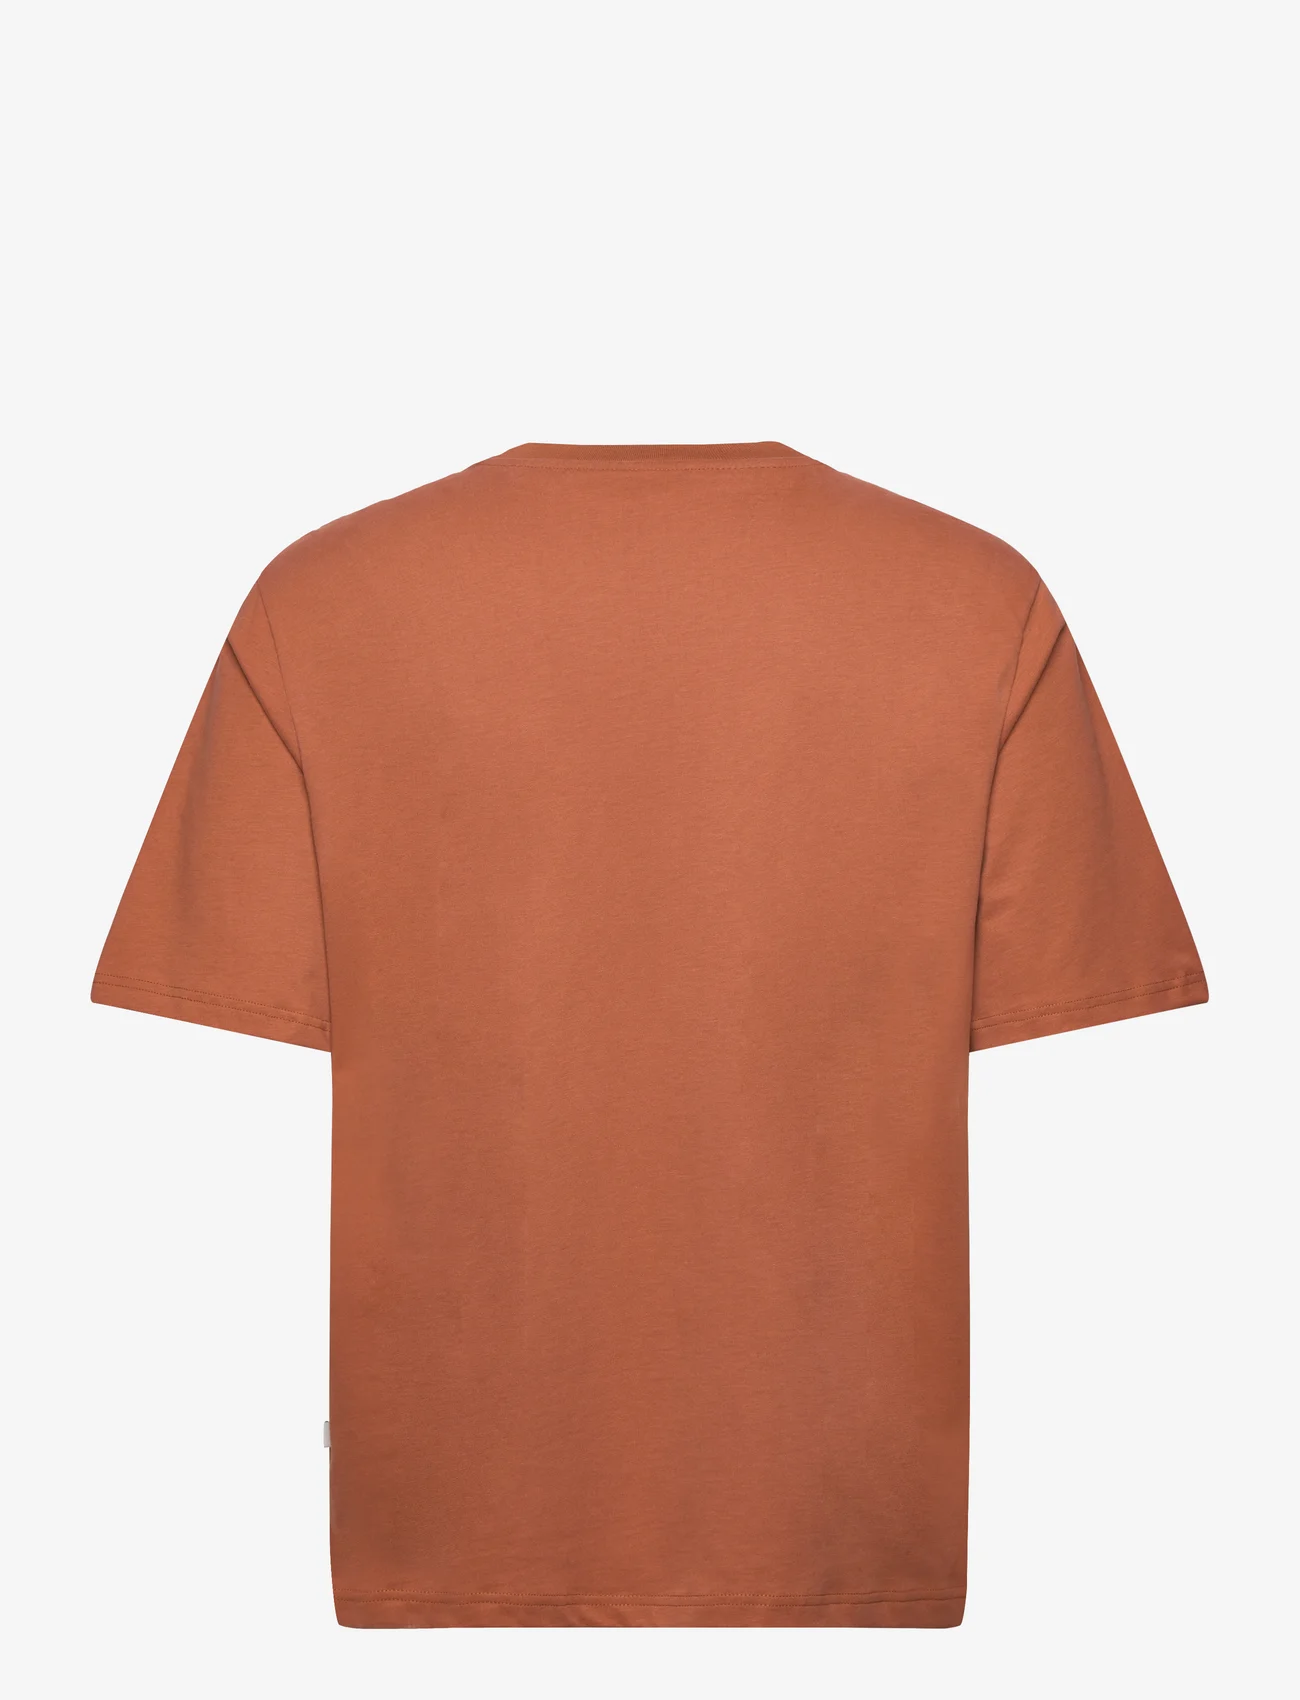 Resteröds - Mid Sleeve T-Shirt GOTS. - kortärmade t-shirts - brun - 1